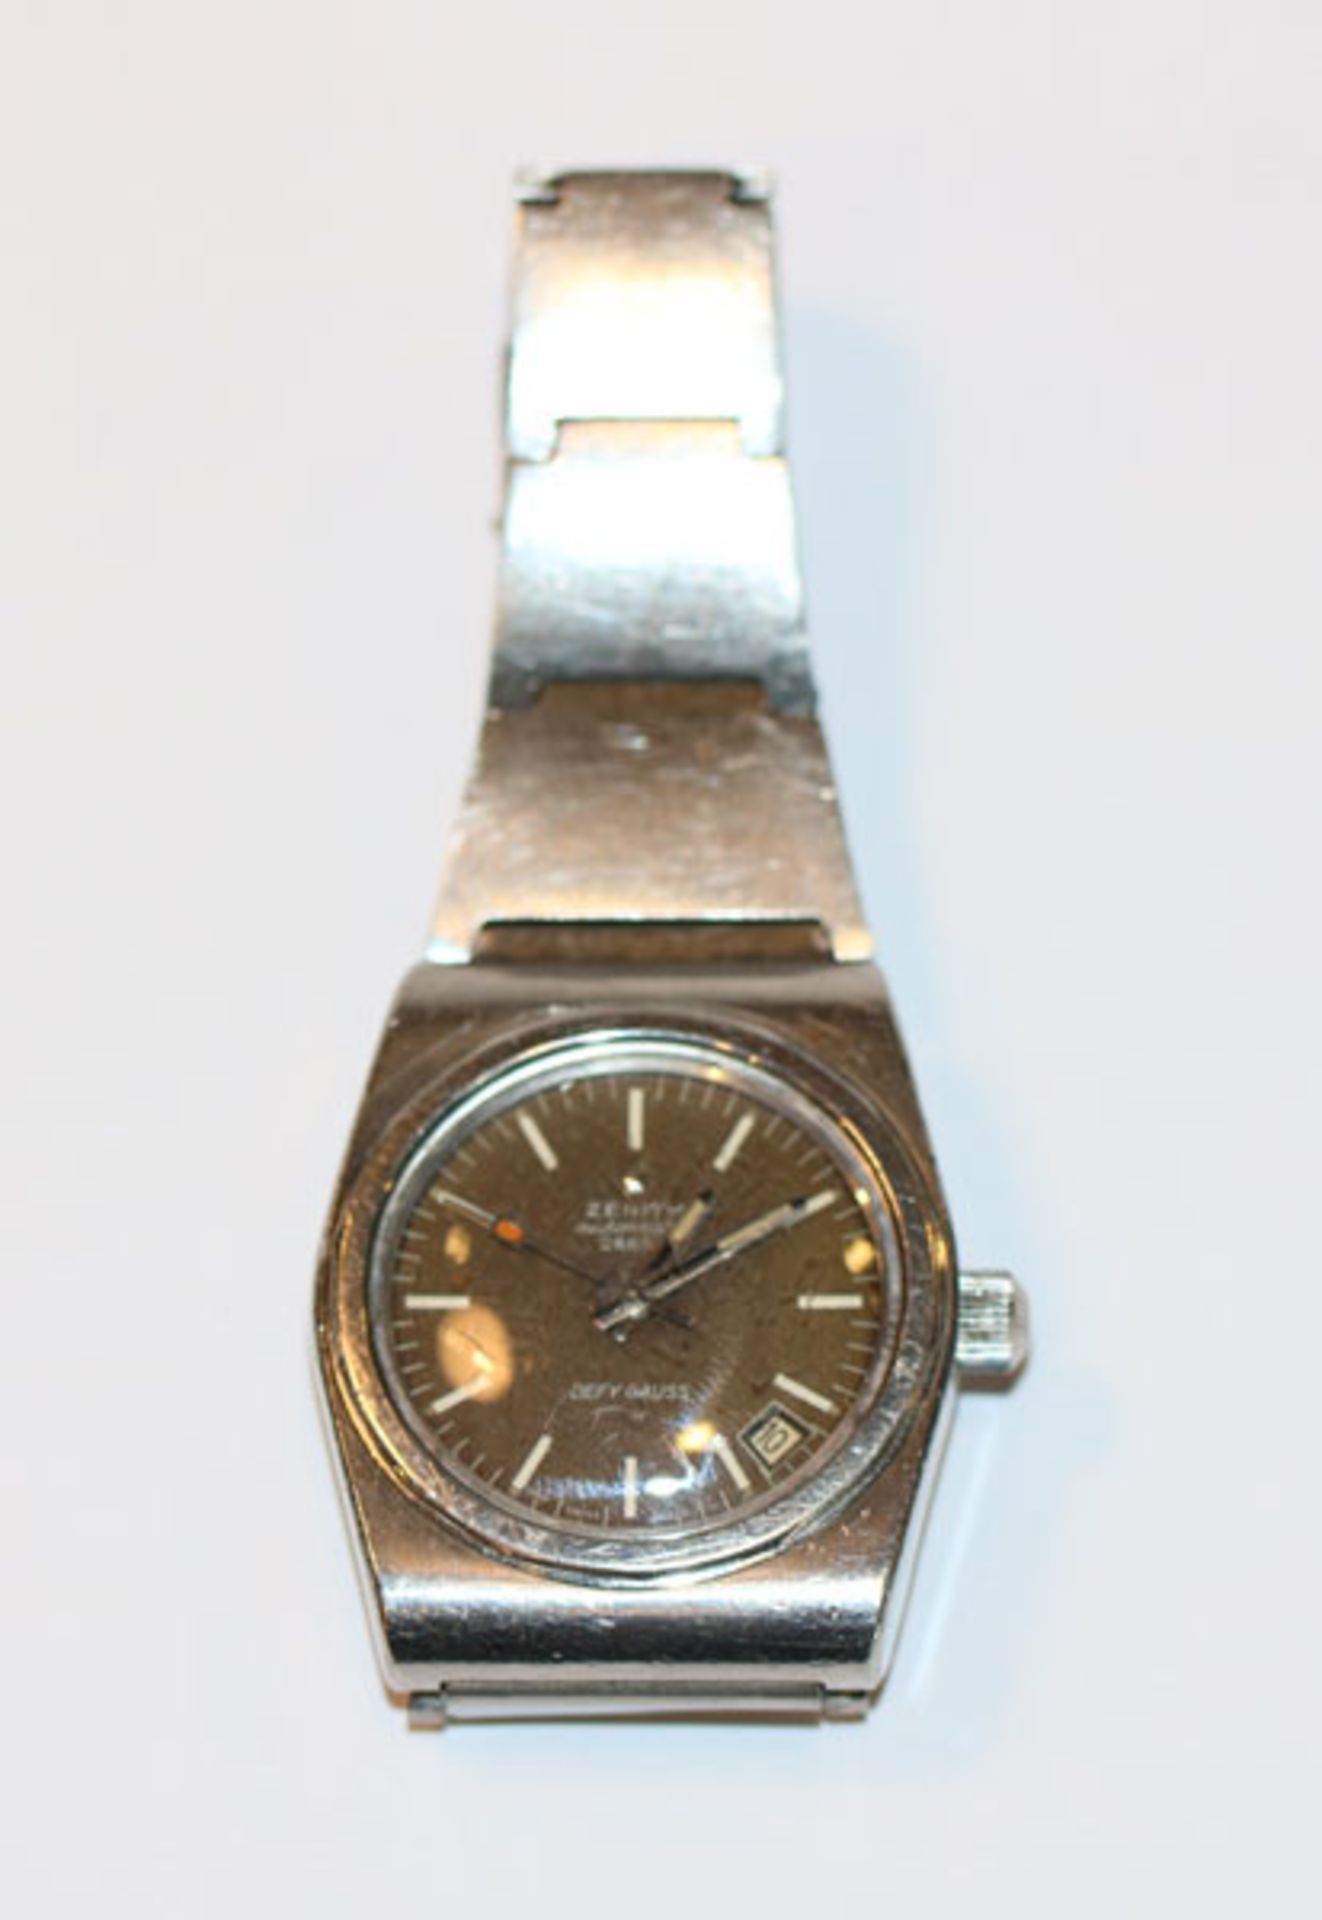 Zenith, Schweiz, Herren-Armbanduhr mit Automatik Werk, Datumsanzeige, Metallarmband, intakt,